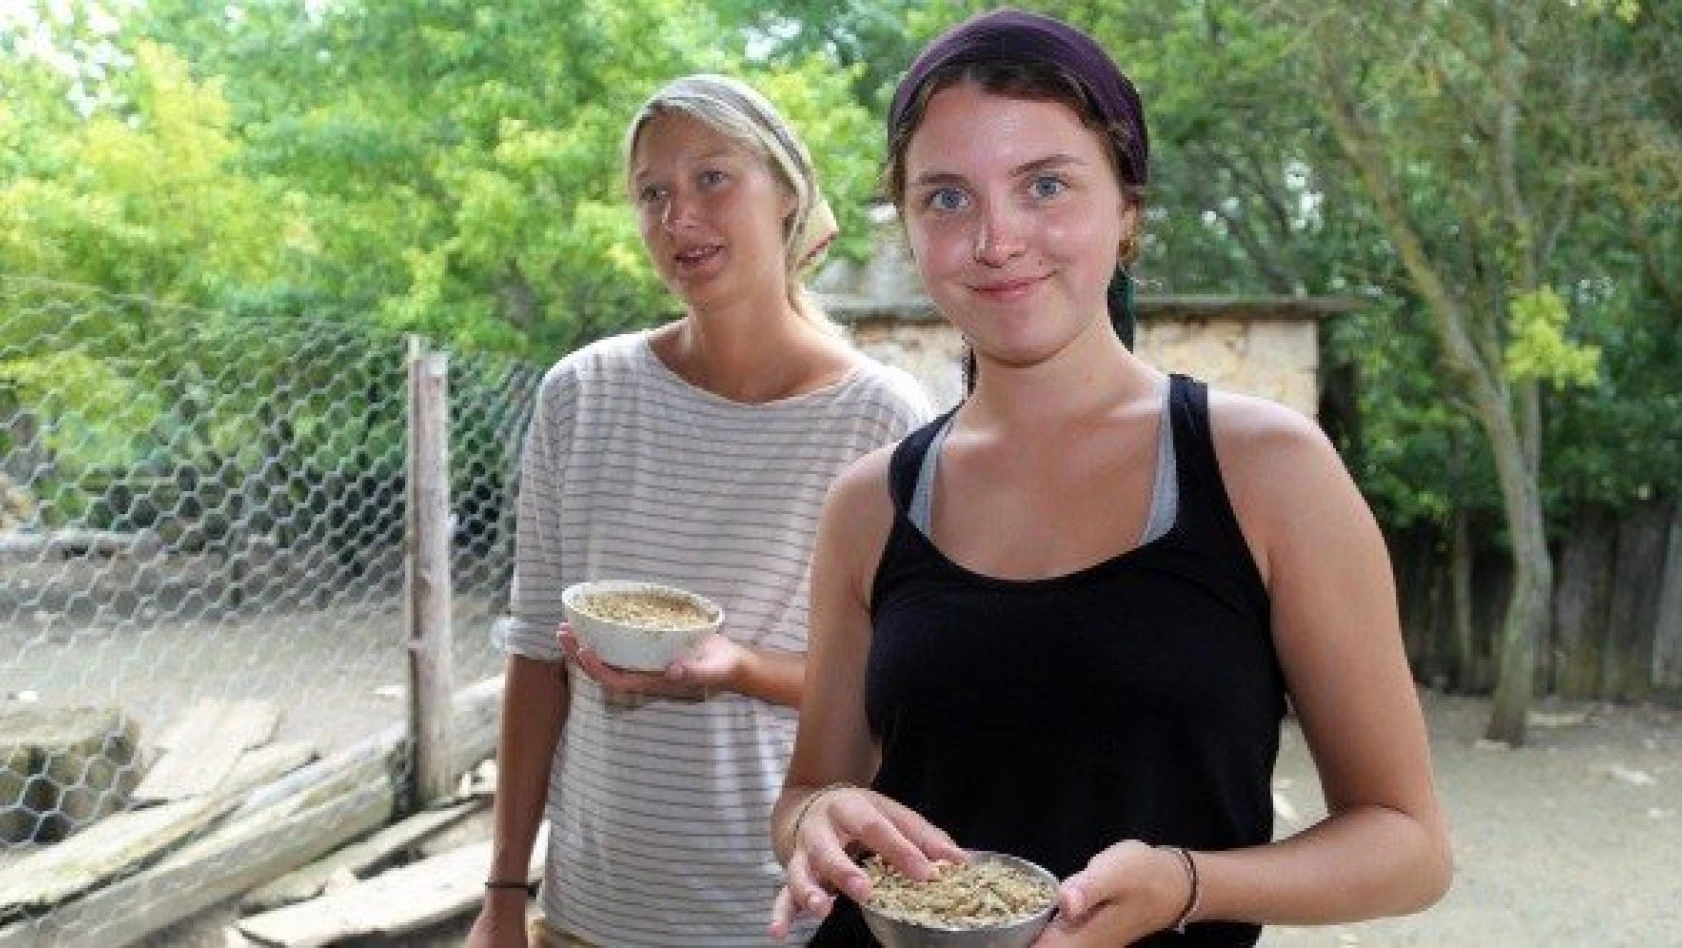 Çalıştıkları çiftlikte tatil yapıp Türk kültürünü öğreniyorlar